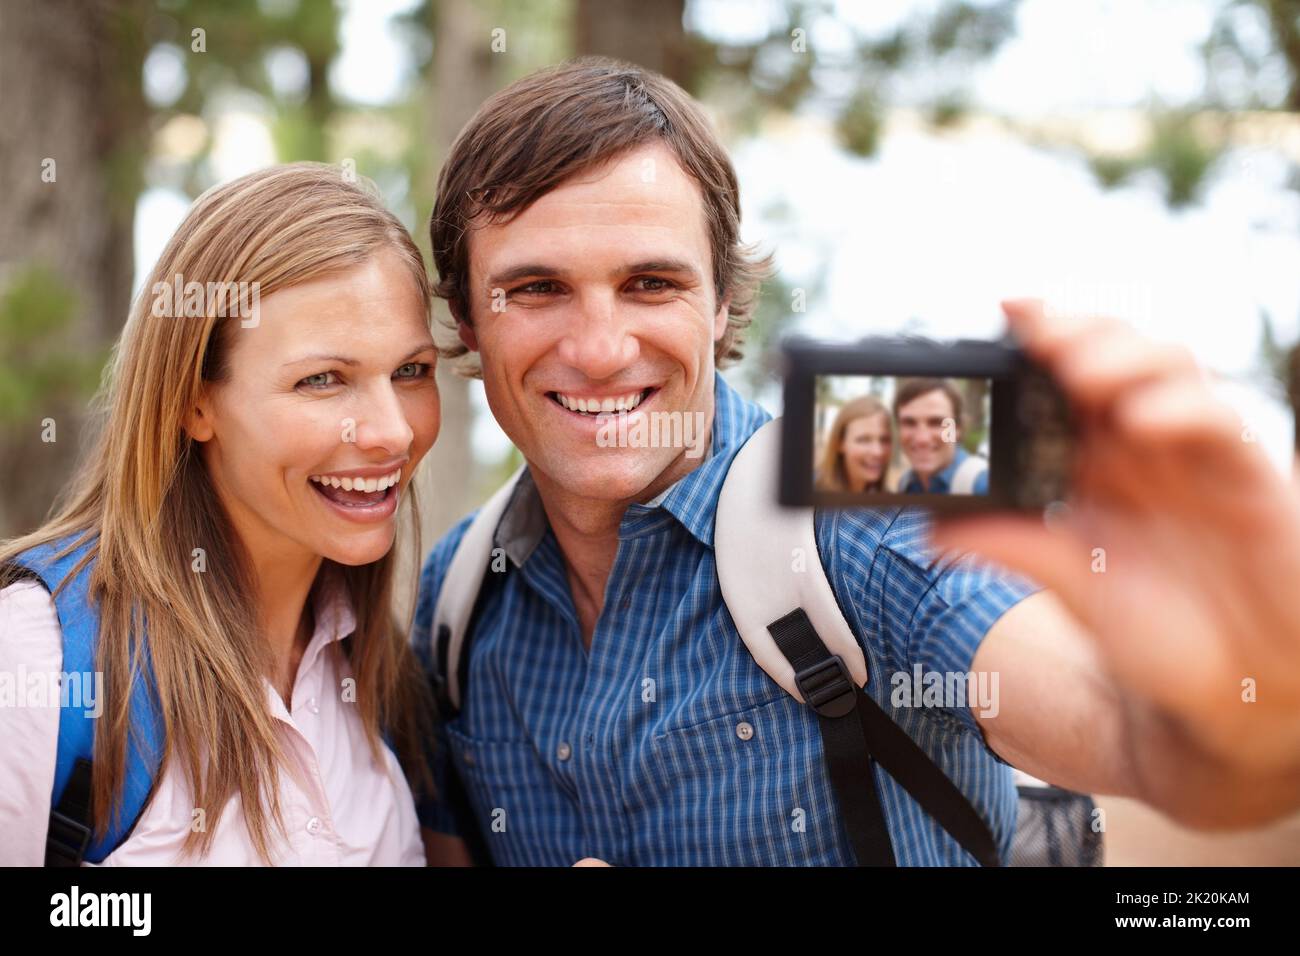 Erinnerungen festhalten. Das Paar schaute auf die Kamera und lächelte mit einem Mann, der ein Foto gemacht hat. Stockfoto